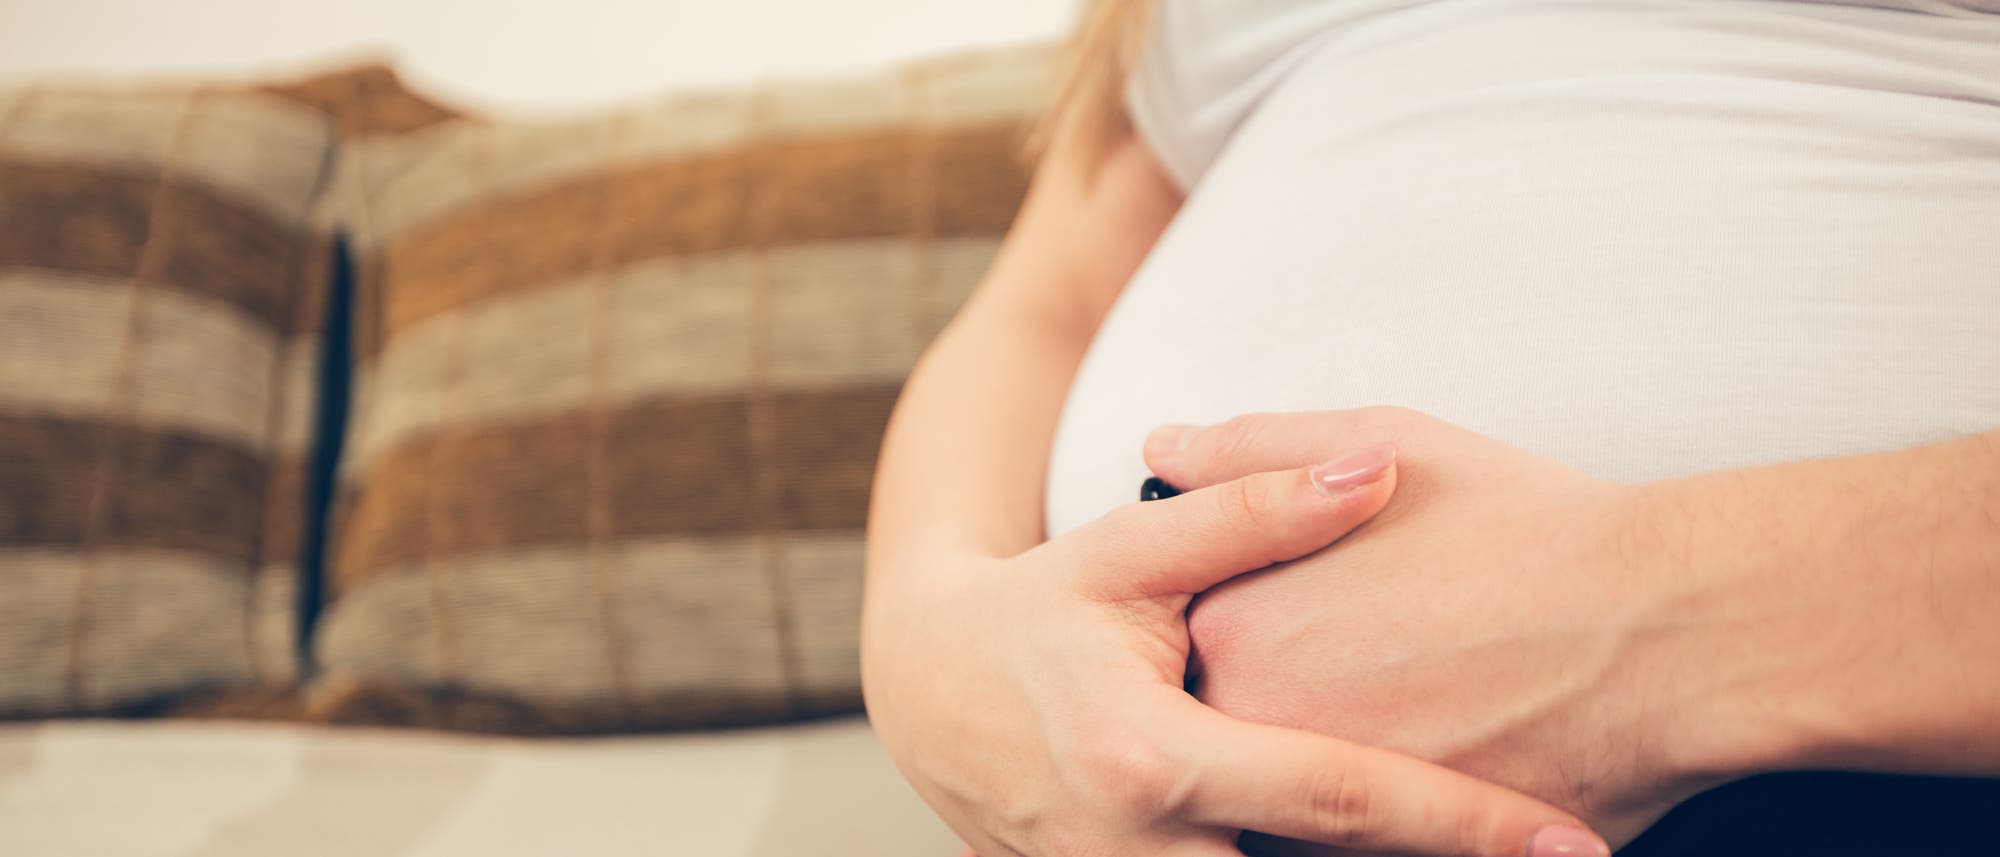 ein Foto zeigt eine Schwangere in weißem Trägertop und schwarzer Hose, die auf dem Sofa sitzt und die Hände vor dem. Babybauch verschränkt hat. Das Gesicht ist nicht zu sehen.